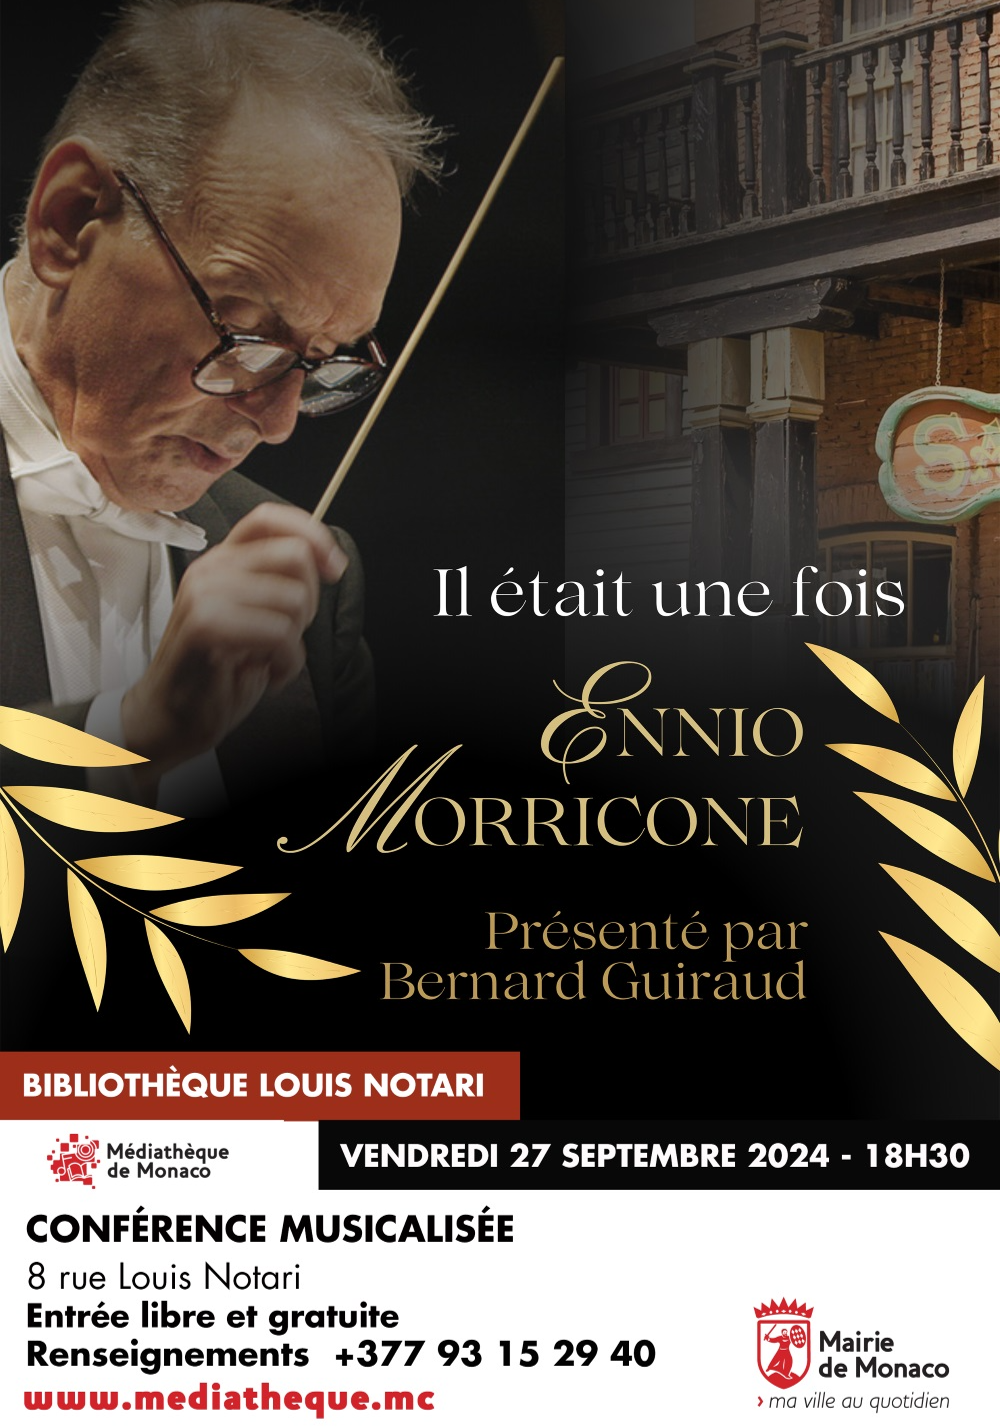 Affiche de l'événement "Il était une fois Ennio Morricone" présenté par Bernard Guiraud